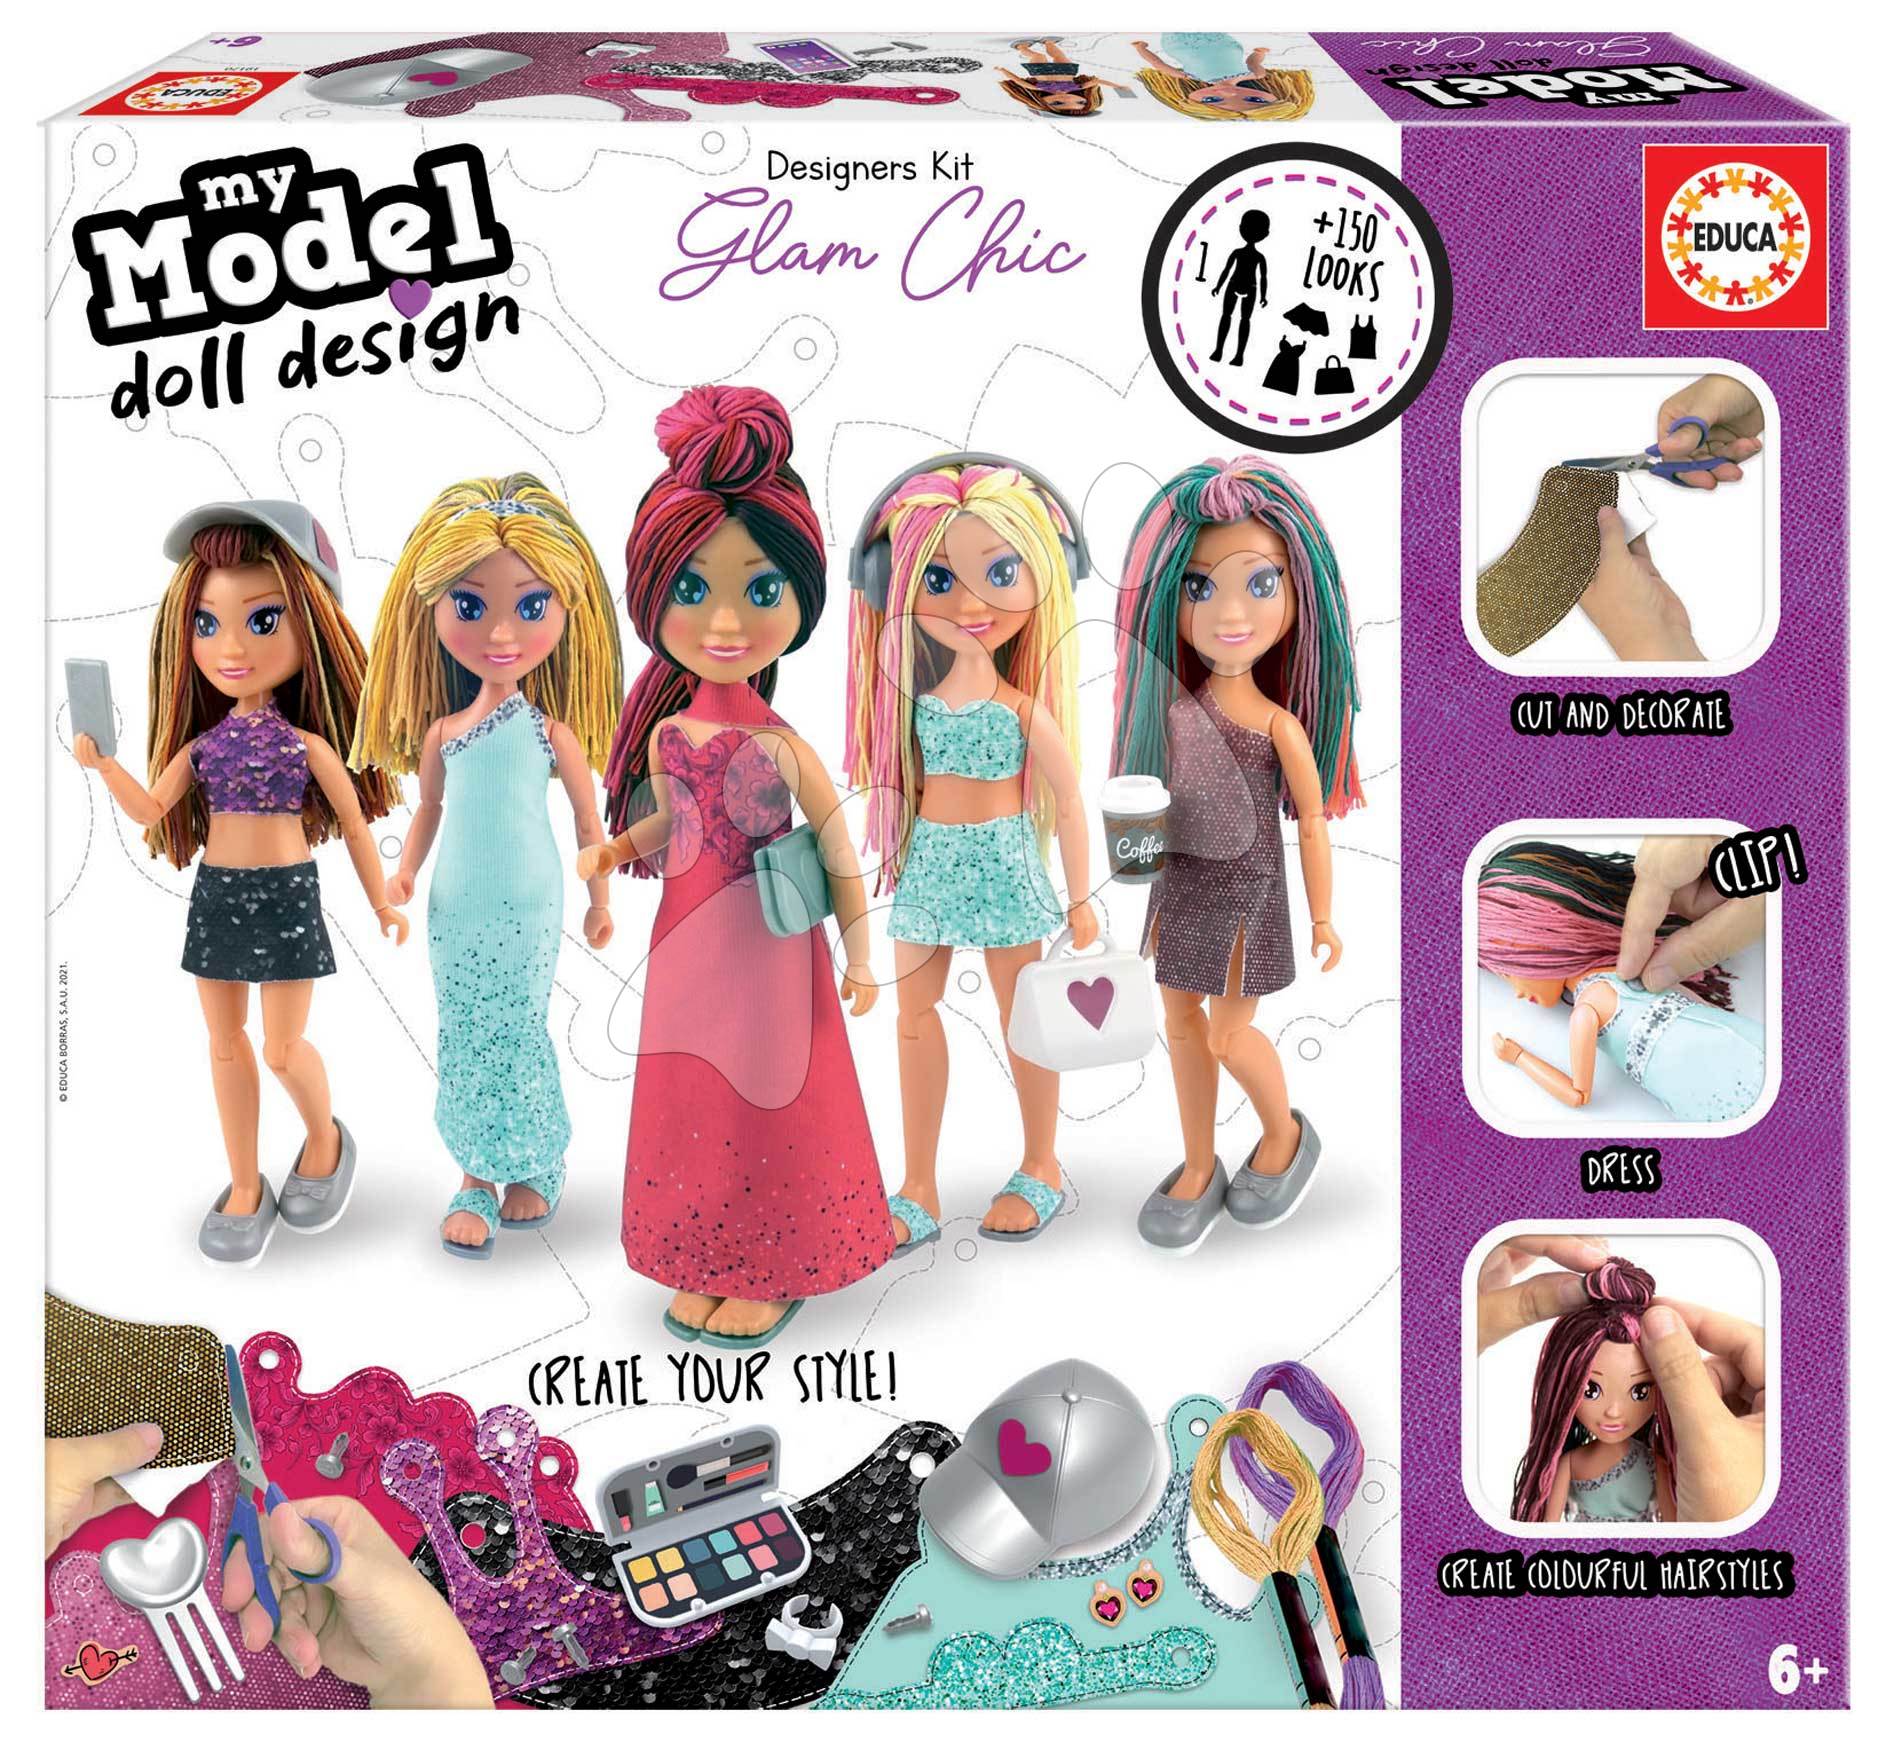 E-shop Kreatívne tvorenie Design Your Doll Glam Chic Educa vyrob si vlastné elegantné bábiky 5 modelov od 6 rokov